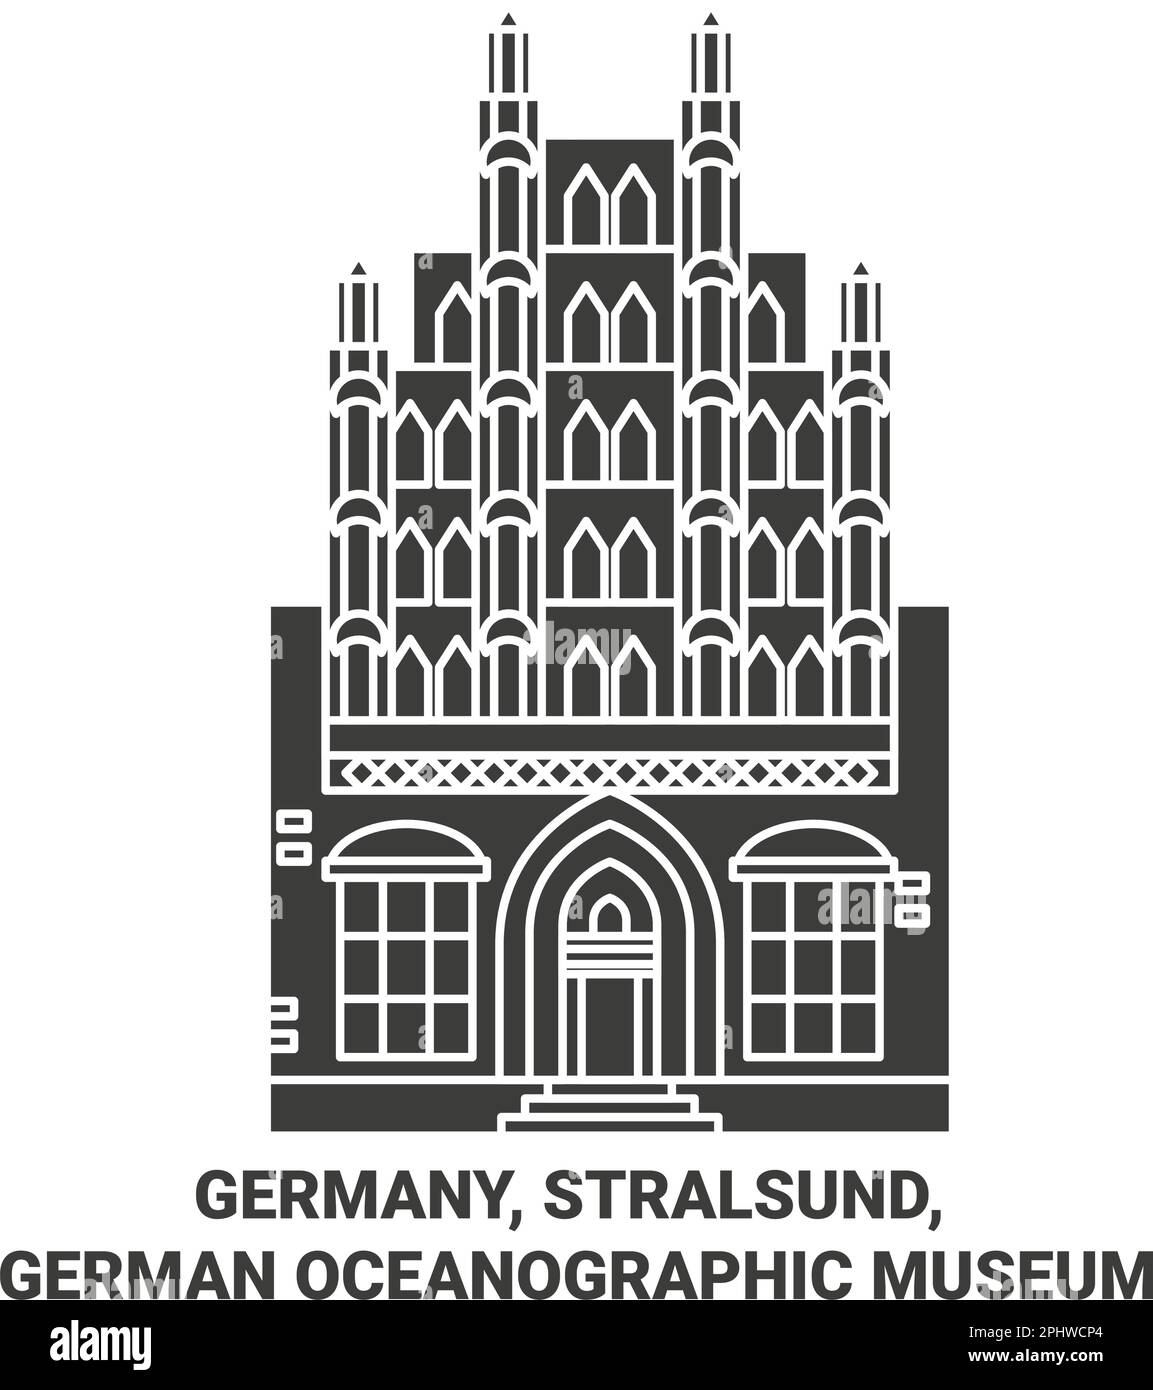 Deutschland, Stralsund, Deutsches Ozeanographisches Museum Reise-Wahrzeichen-Vektordarstellung Stock Vektor